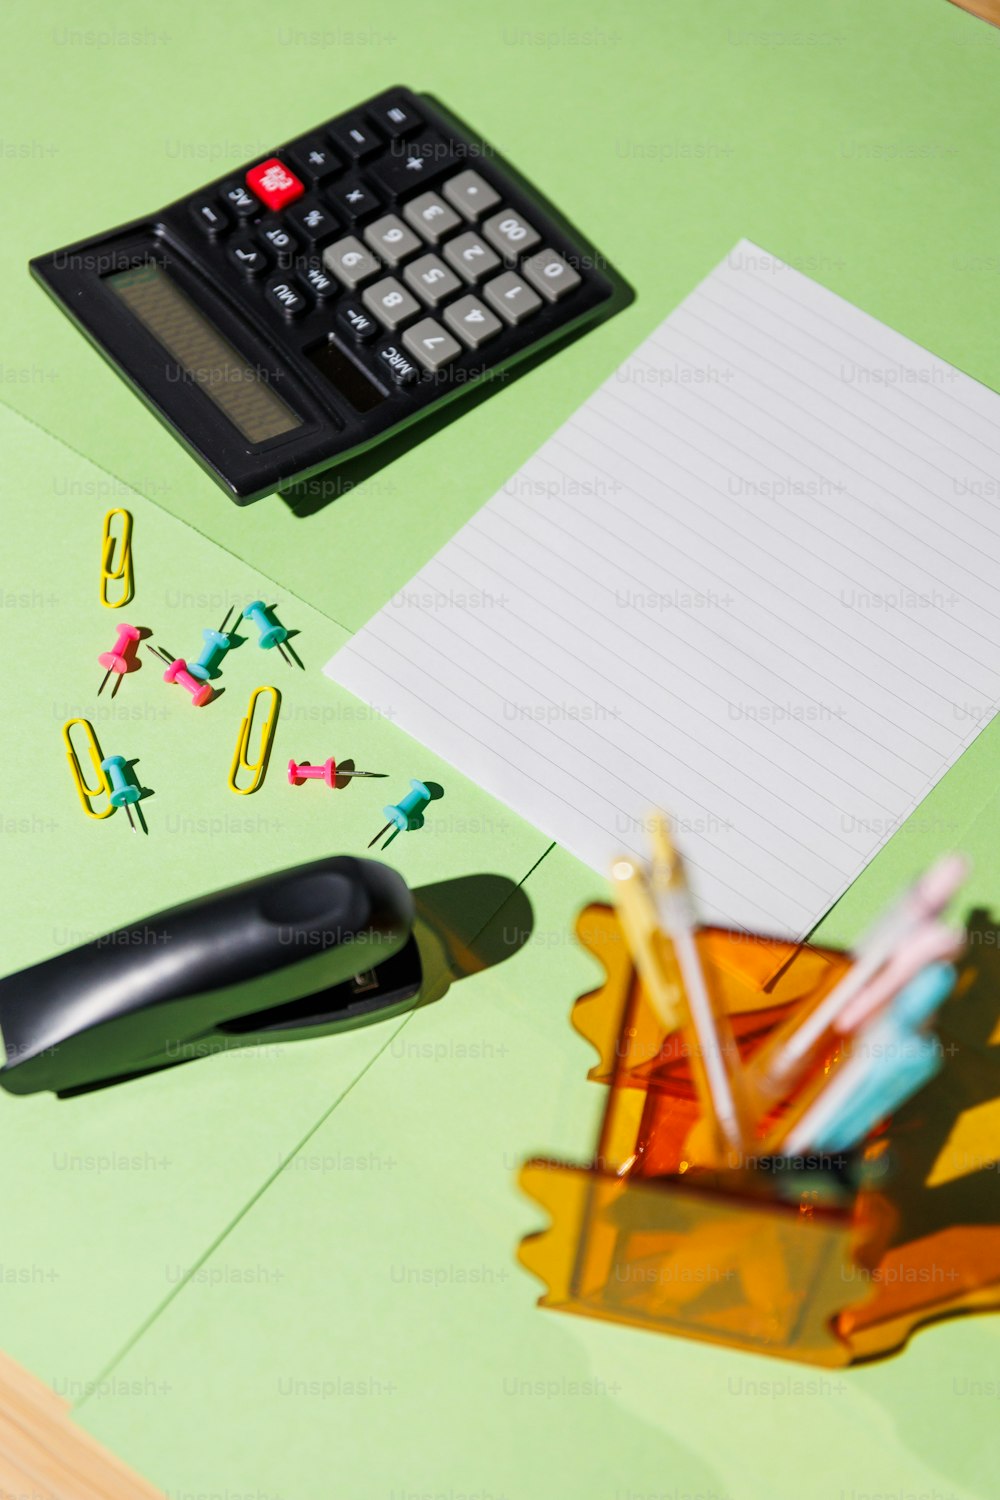 una scrivania con una calcolatrice, matite e un blocco note